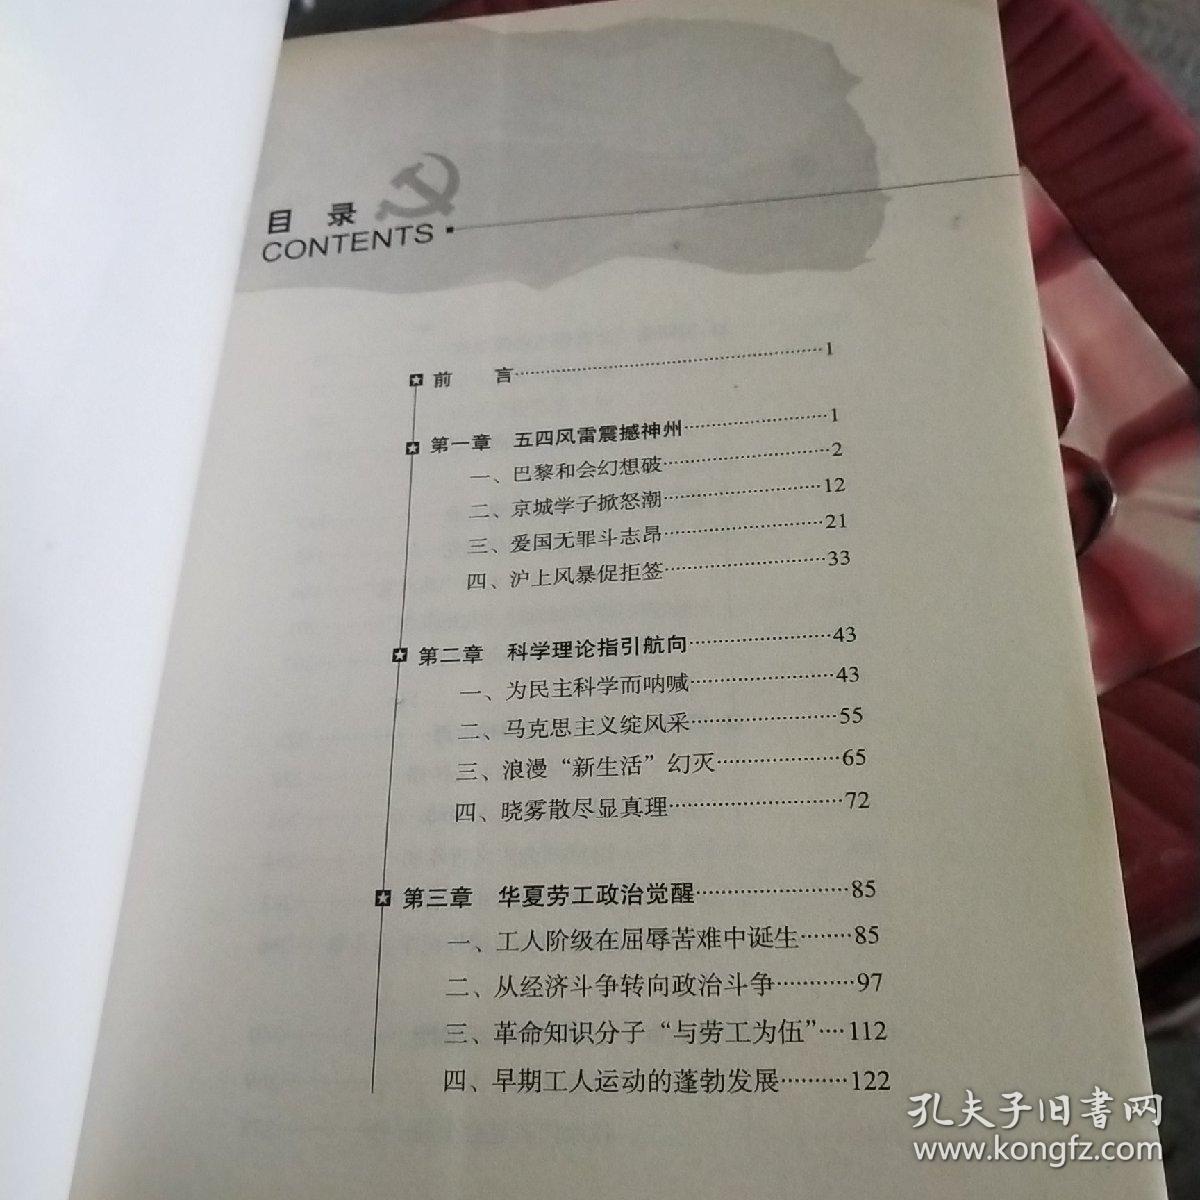 日出东方：中国共产党创建纪实  品如图  正版现货 货号20-8